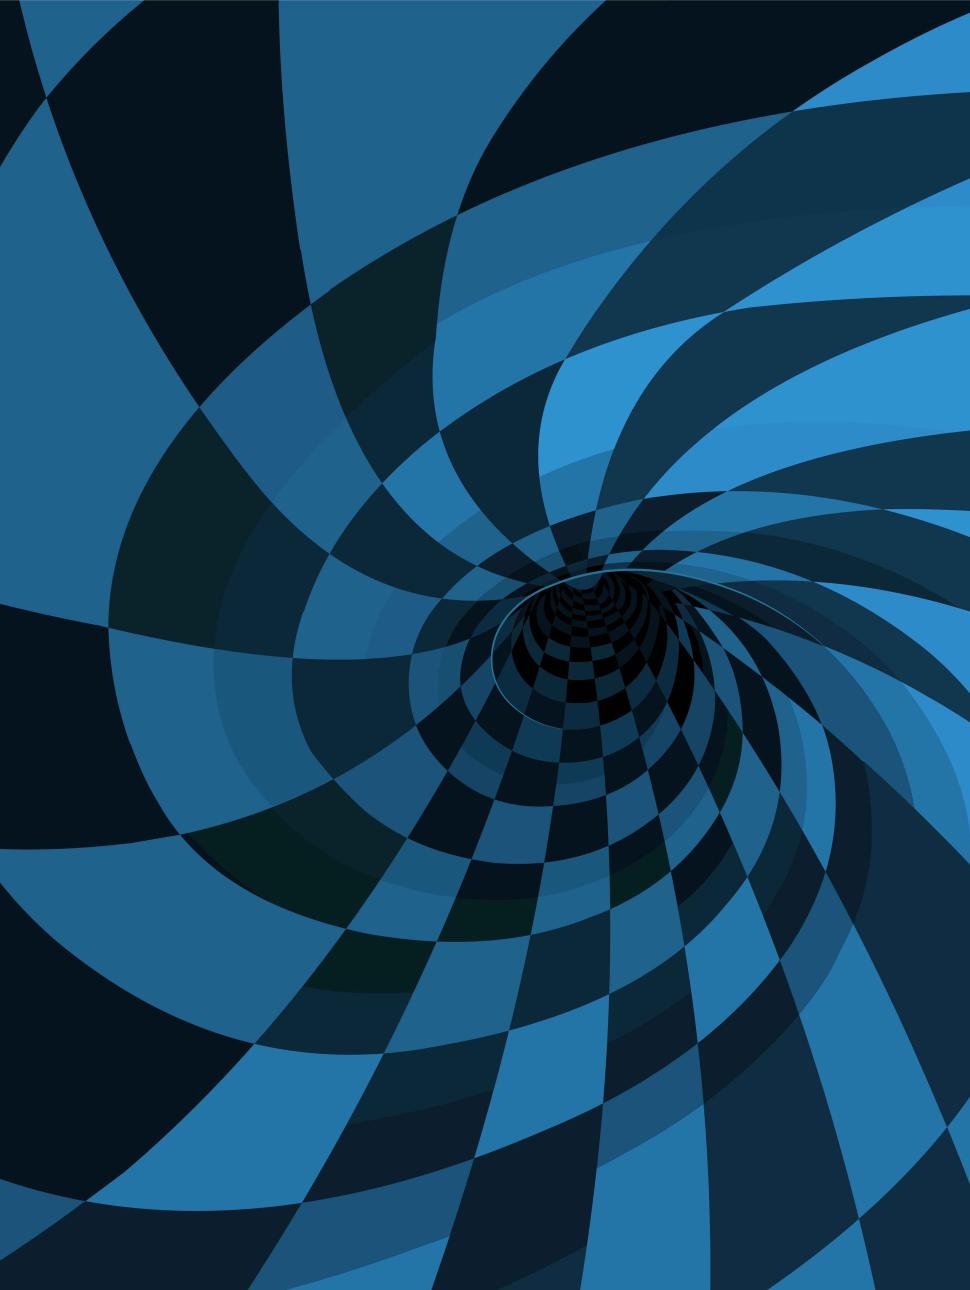 Dark and light blue navy checkered spiral/vortex